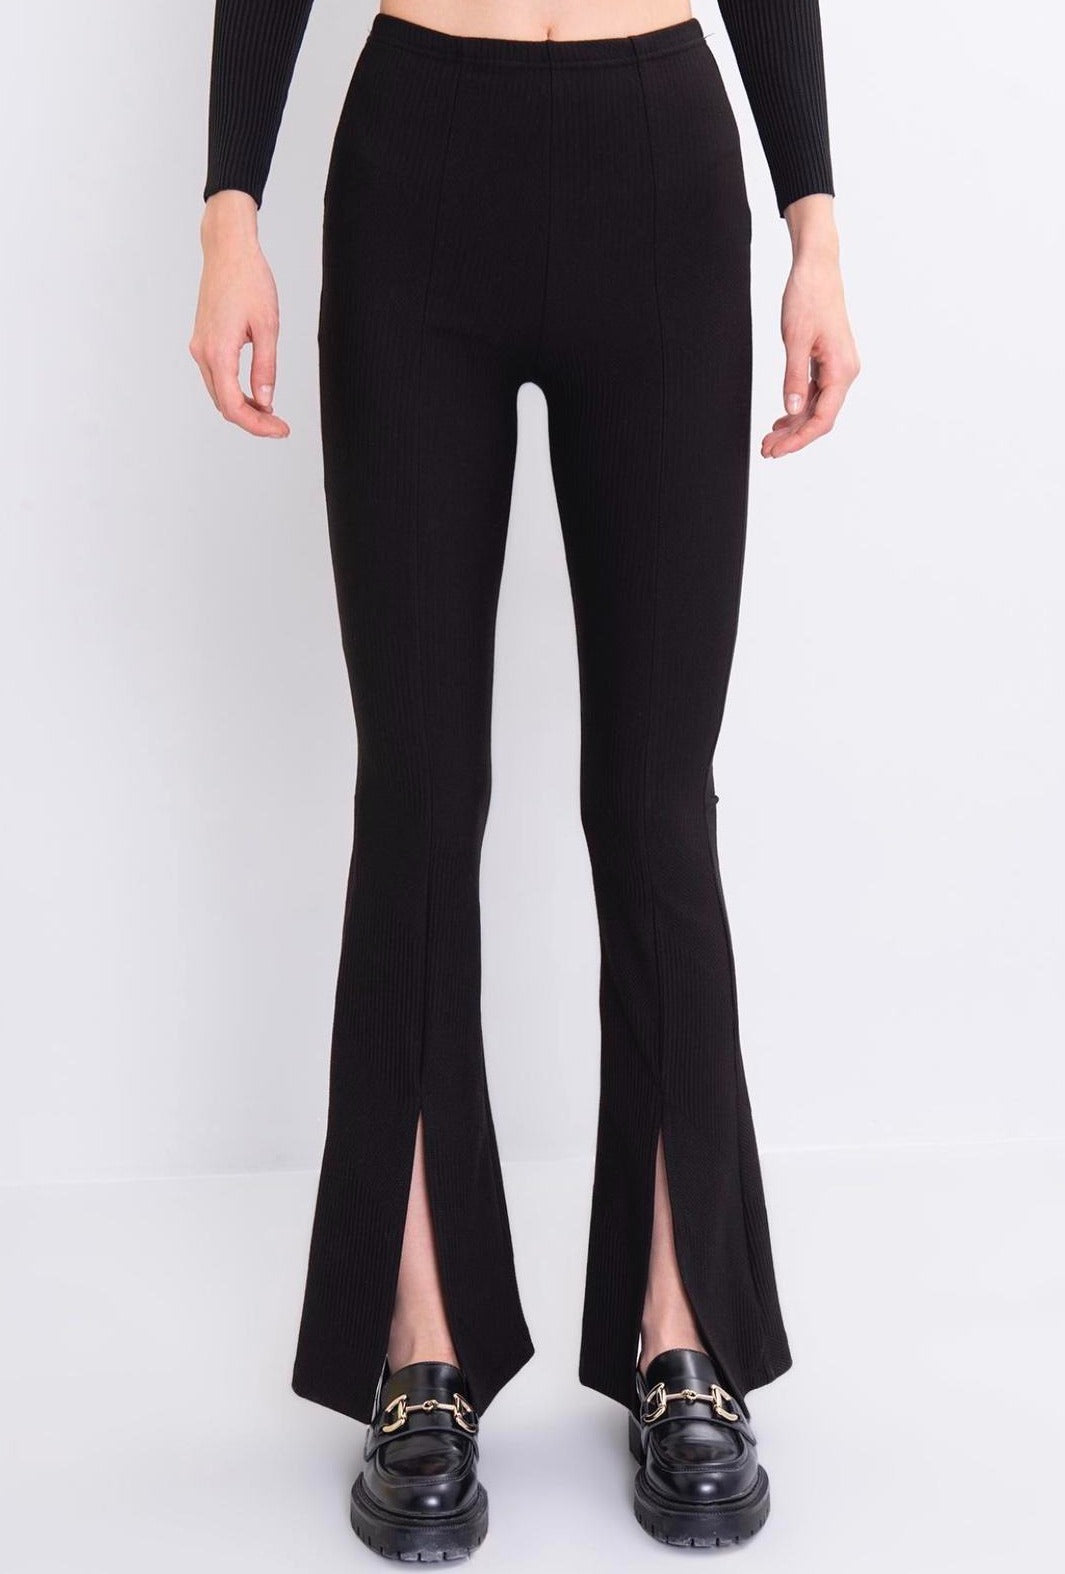 Дамски панталон SIBILLA  https://bvseductive.com/products/дамски-панталон-sibilla  90 % полиестер 10 % еластан стилен дамски панталон в черен цвят модерен дизайн, описващ женствено силуета еластичност&nbsp; за повече комфорт с акцент разкрояване под коляното и цепка идеално допълнение към ежедневния Ви гардероб